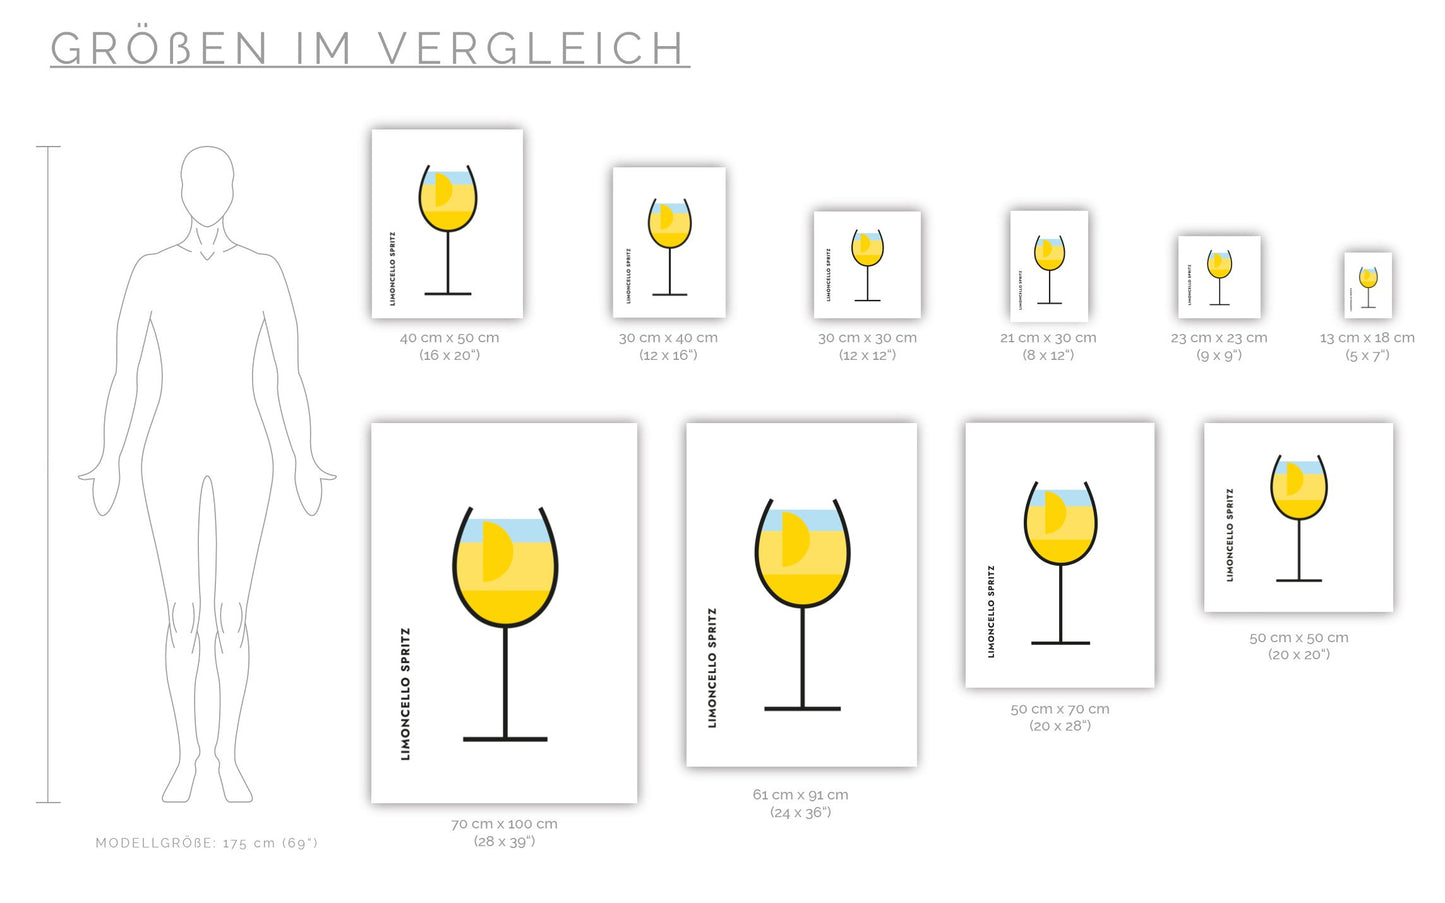 Poster Limoncello Spritz im Glas (Bauhaus-Style)